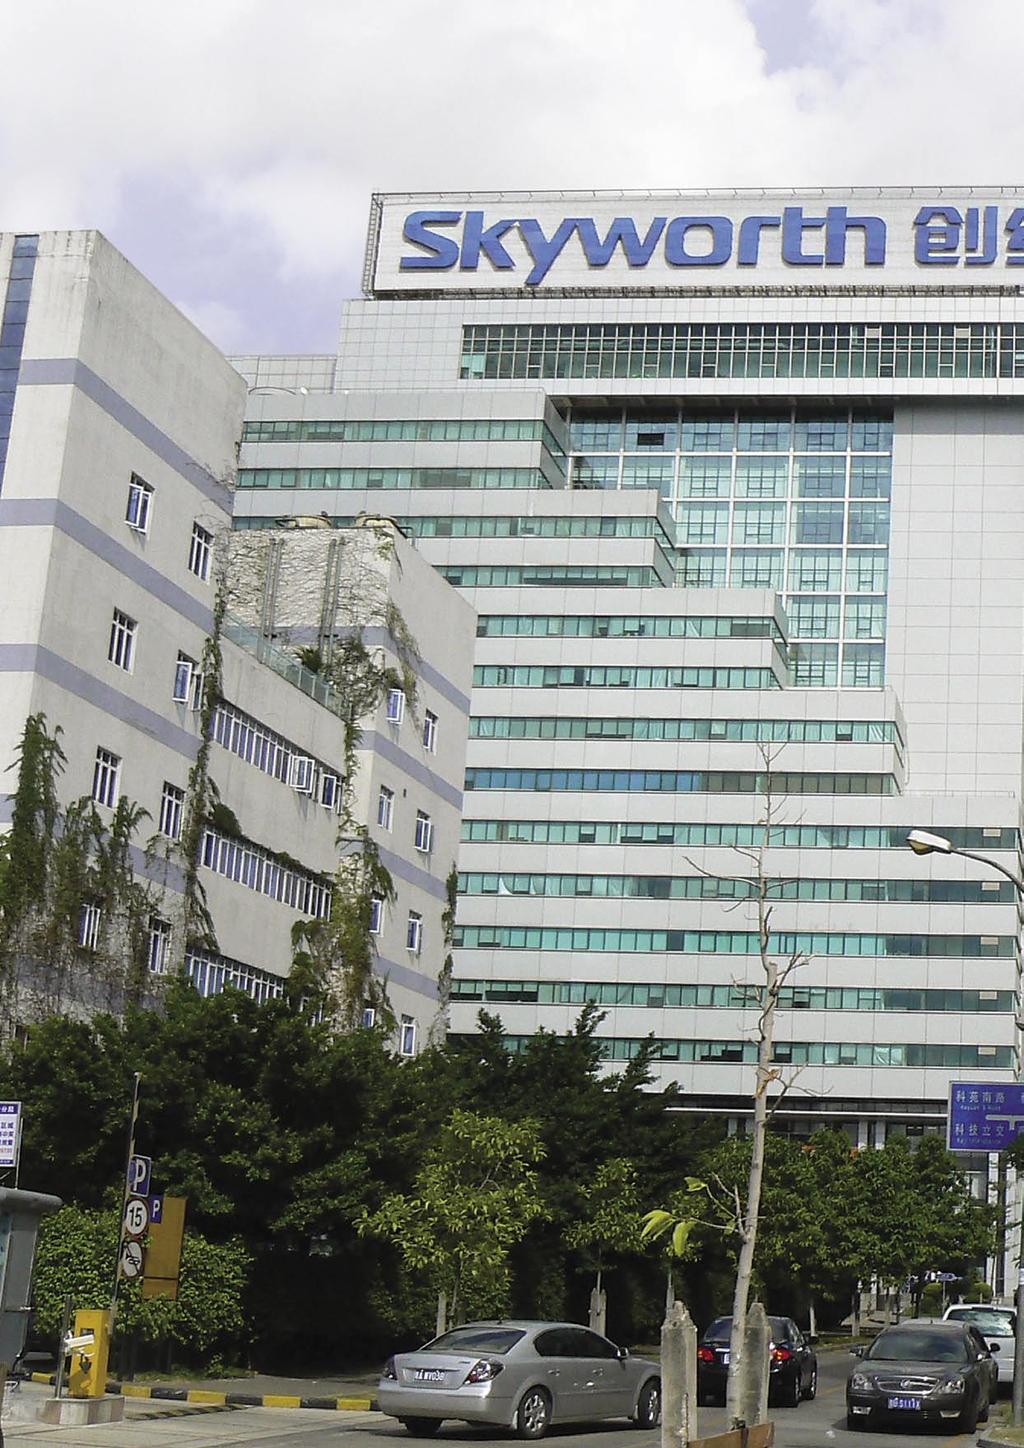 COMPANY REPORT Výrobce satelitních přijímačů Skyworth, Čína Řízení kvality od Skyworth TELE-satellite World www.tele-satellite.com/.